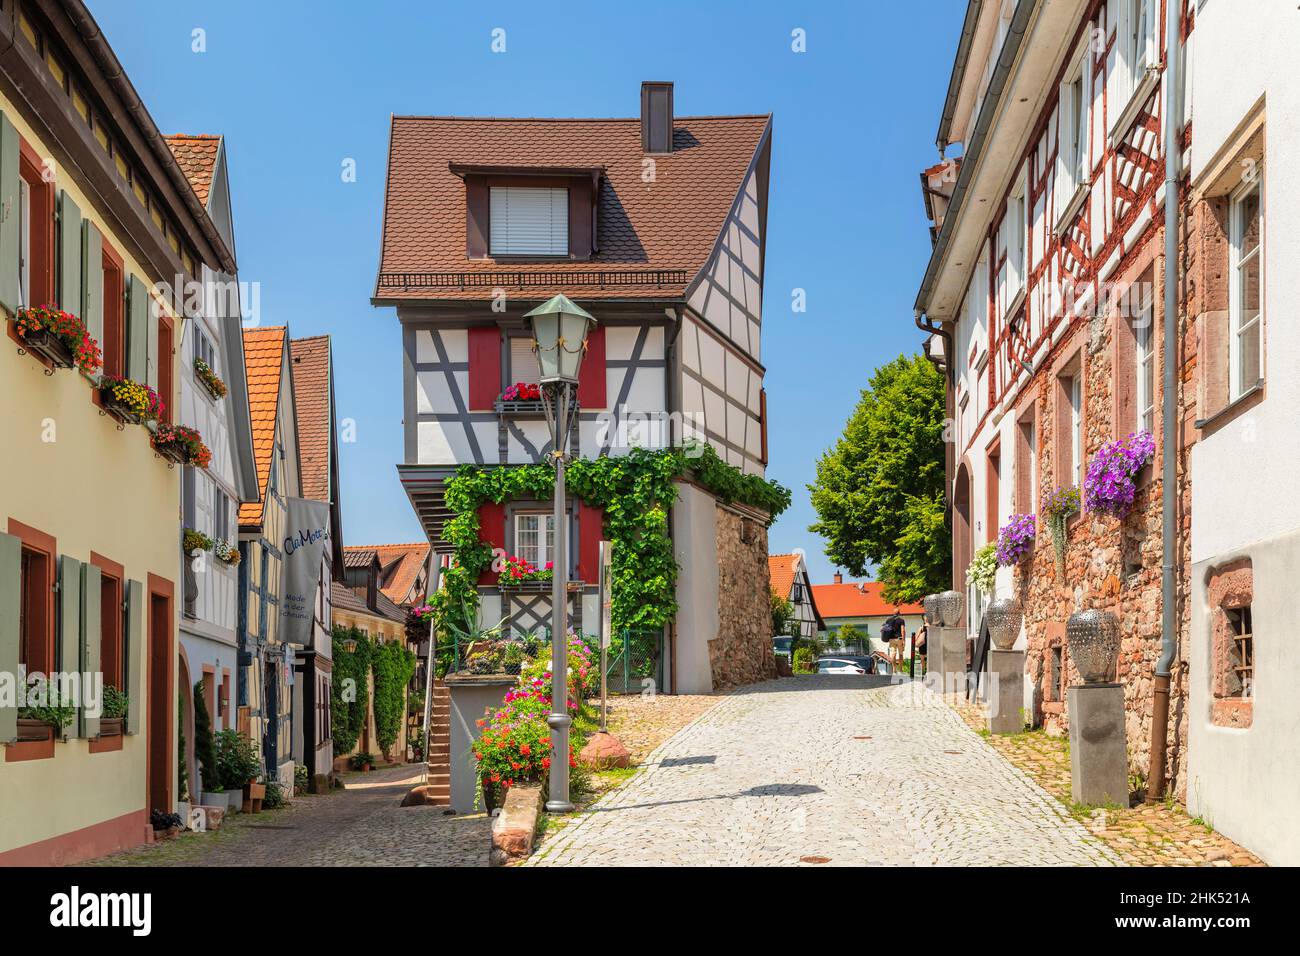 Maisons à colombages dans la vieille ville de Gengenbach, vallée de Kinzigtal, Forêt Noire, Bade-Wurtemberg, Allemagne,Europe Banque D'Images